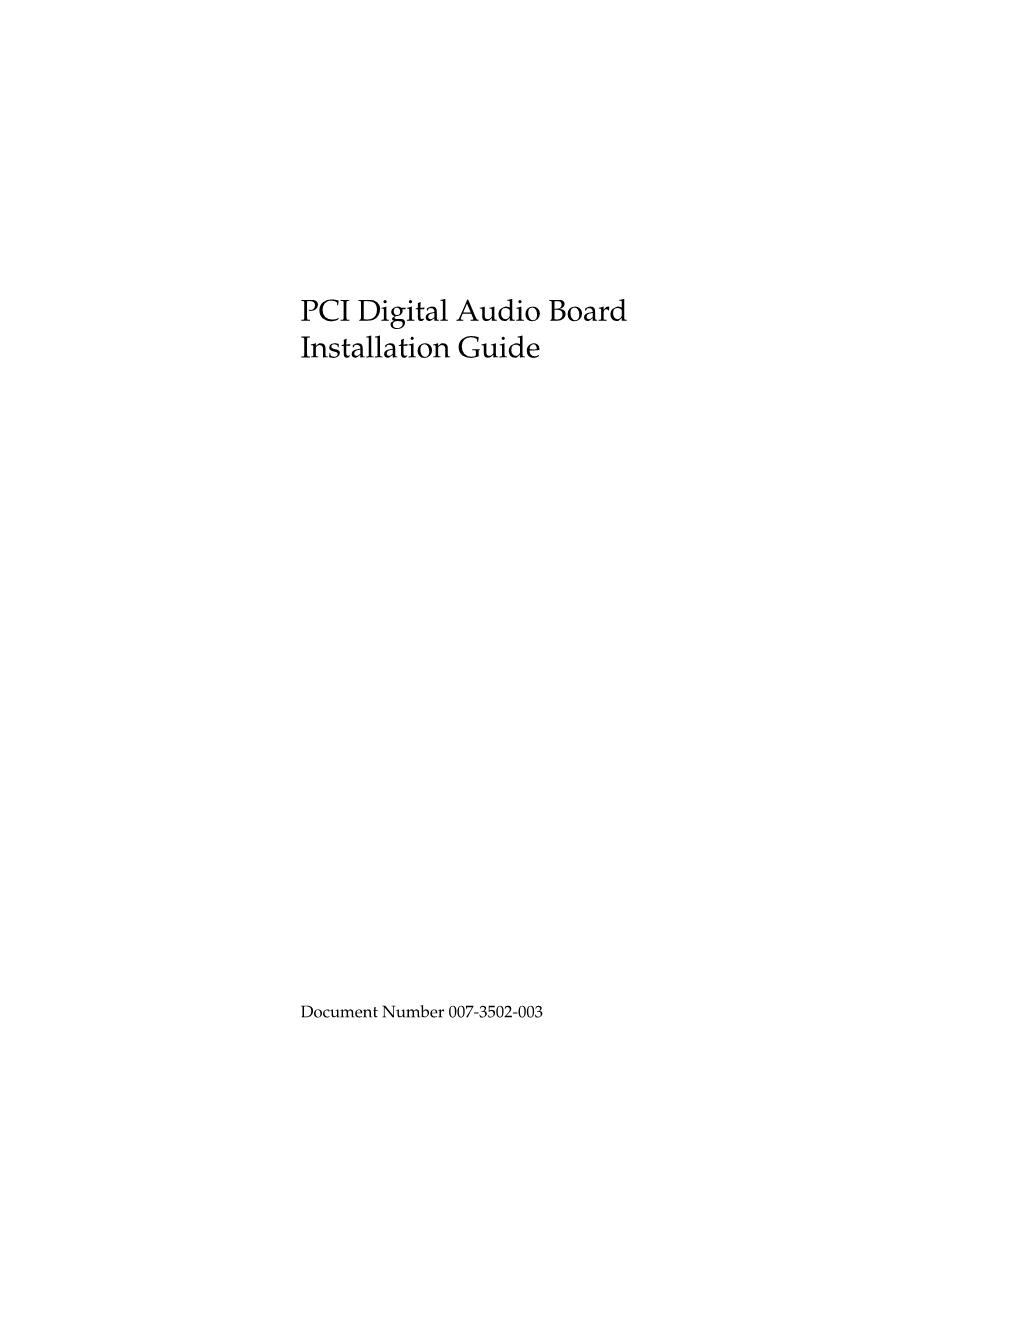 PCI Digital Audio Board Installation Guide